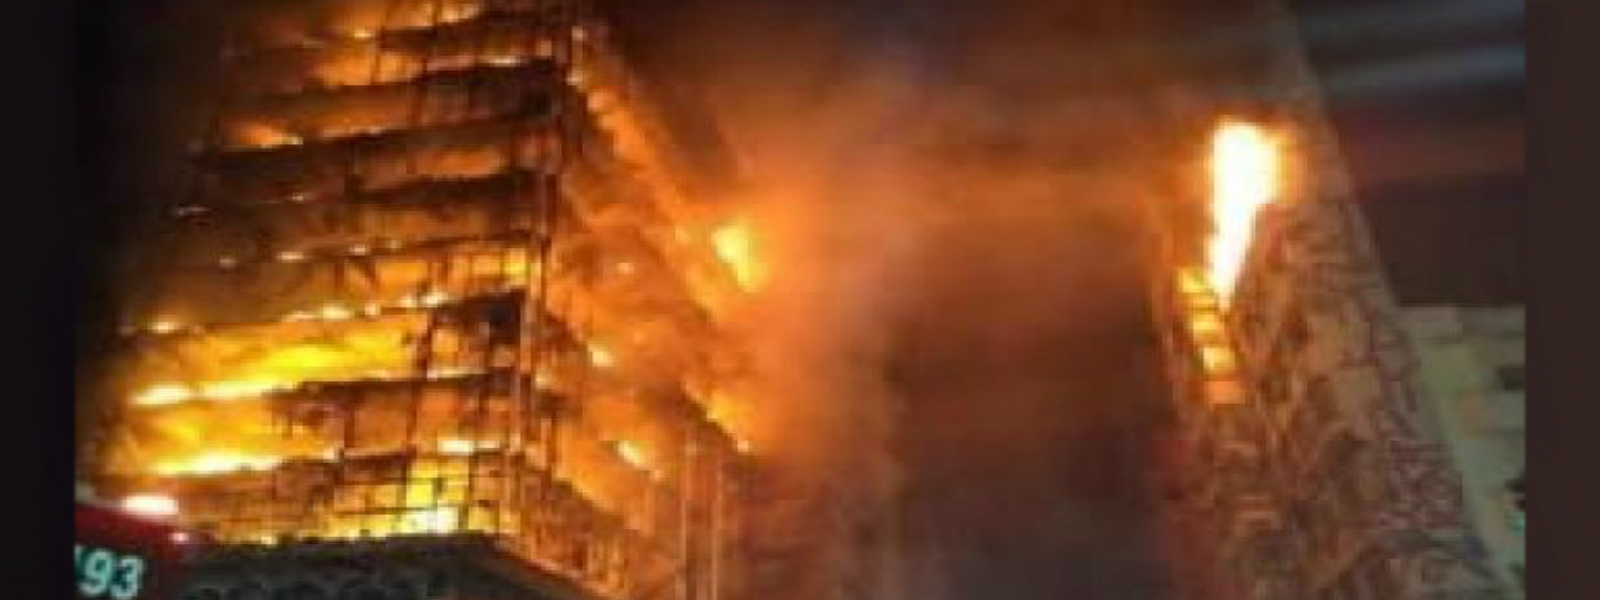 São Paulo building collapses in huge blaze